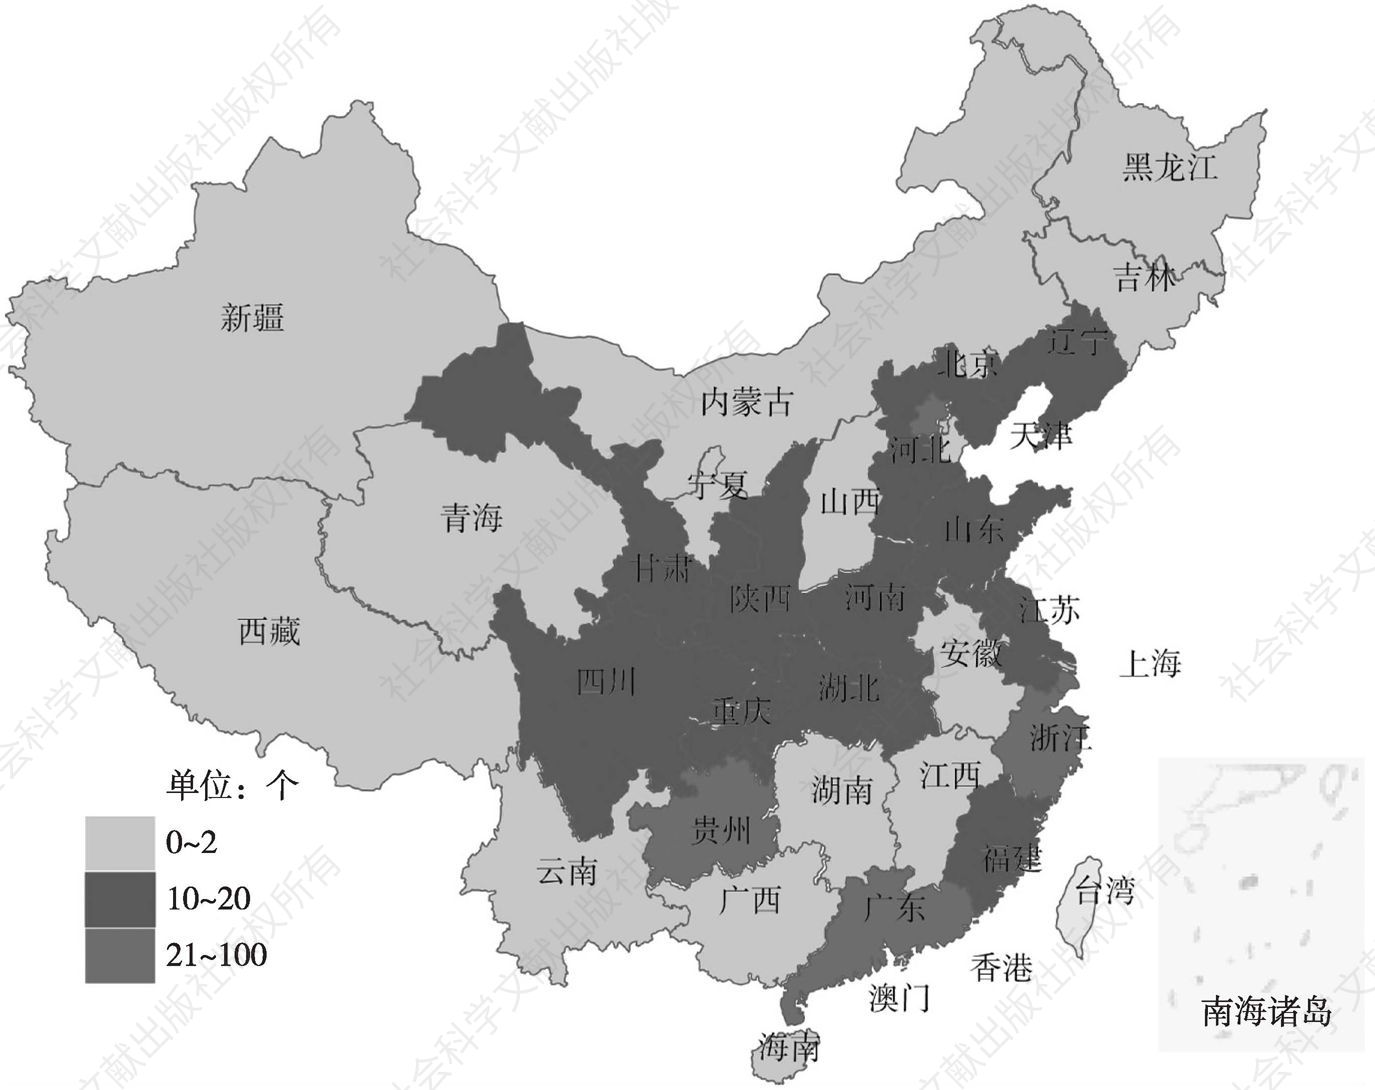 图2 中国大数据事件分布